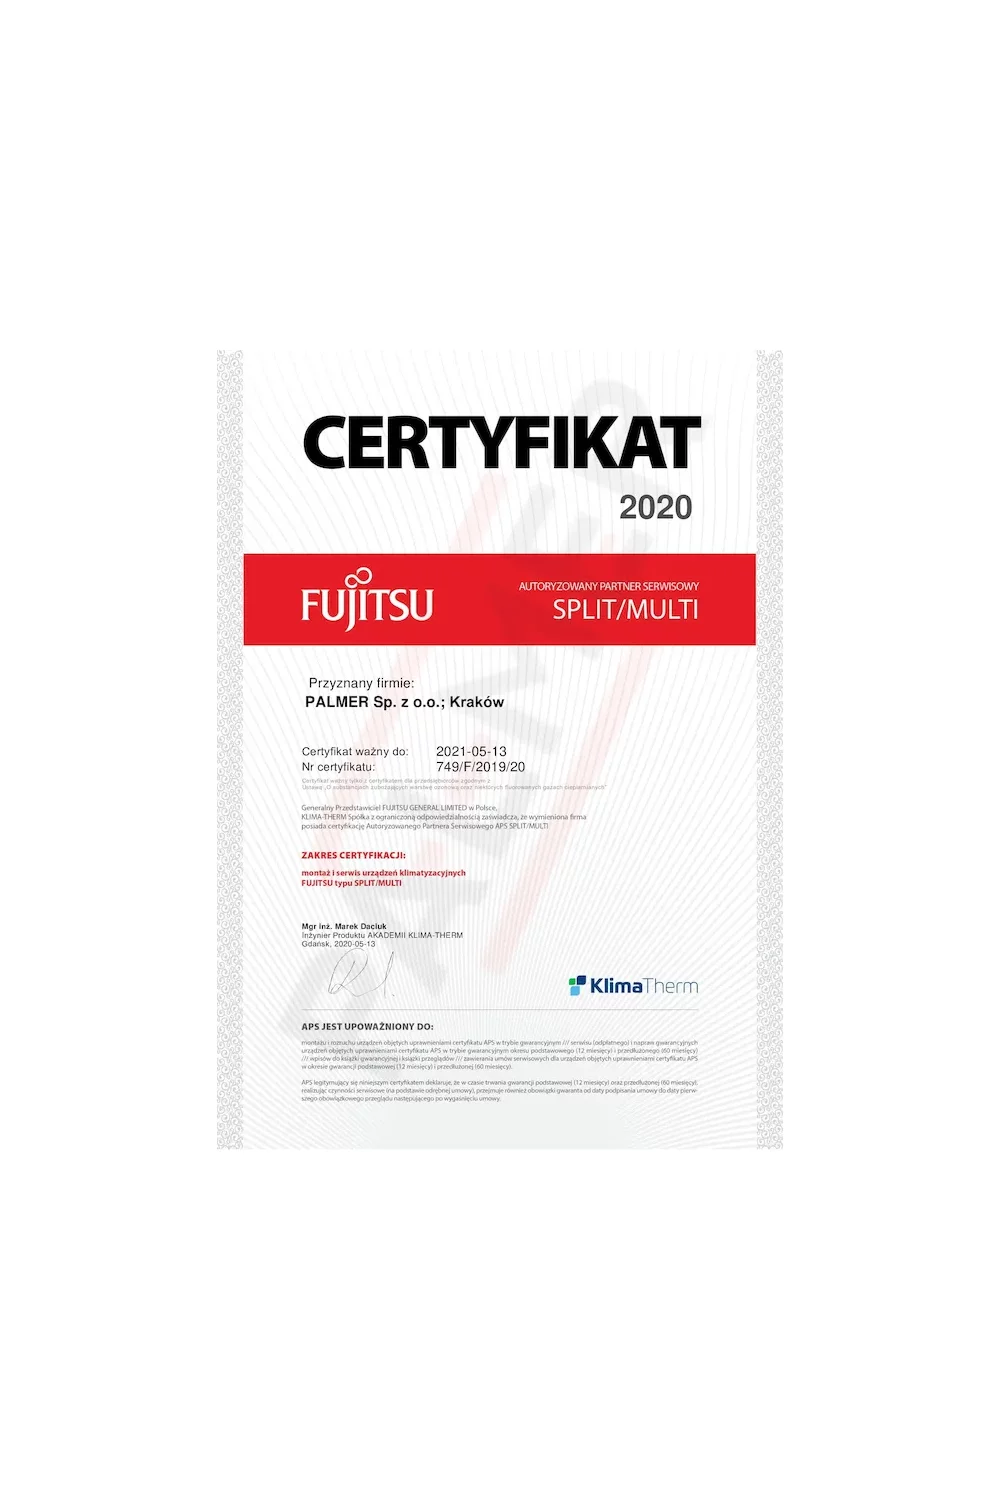 Certyfikat Fujitsu 2020 - zdjęcie